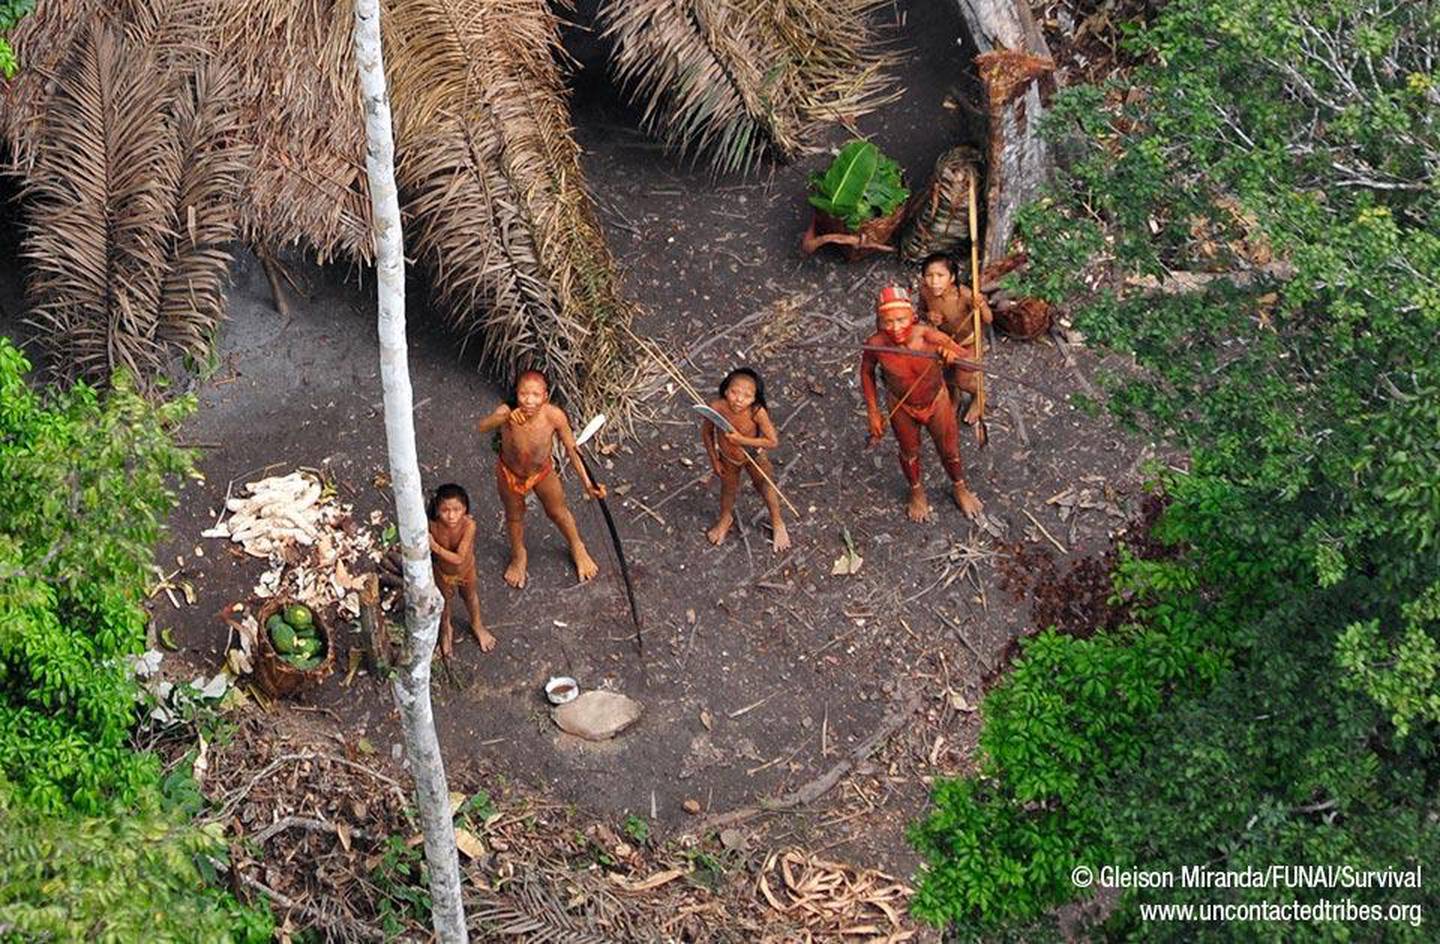 Dette bildet fra 2010 viser en ukjent urfolkgruppe i Amazonas. Nå som misjonsorganisasjonen New Tribes Mission Brazil (NTM) har anskaffet et helikopter og tillatelse fra kongressen om å oppholde seg på urfolk-territorier, frykter urfolksaktivister at misjonærene vil forsøke å nå slike ukontaktede og isolerte grupper, som har dårlige forutsetninger for å overleve hvis noen skulle ha tatt med koronapandemien til dem.